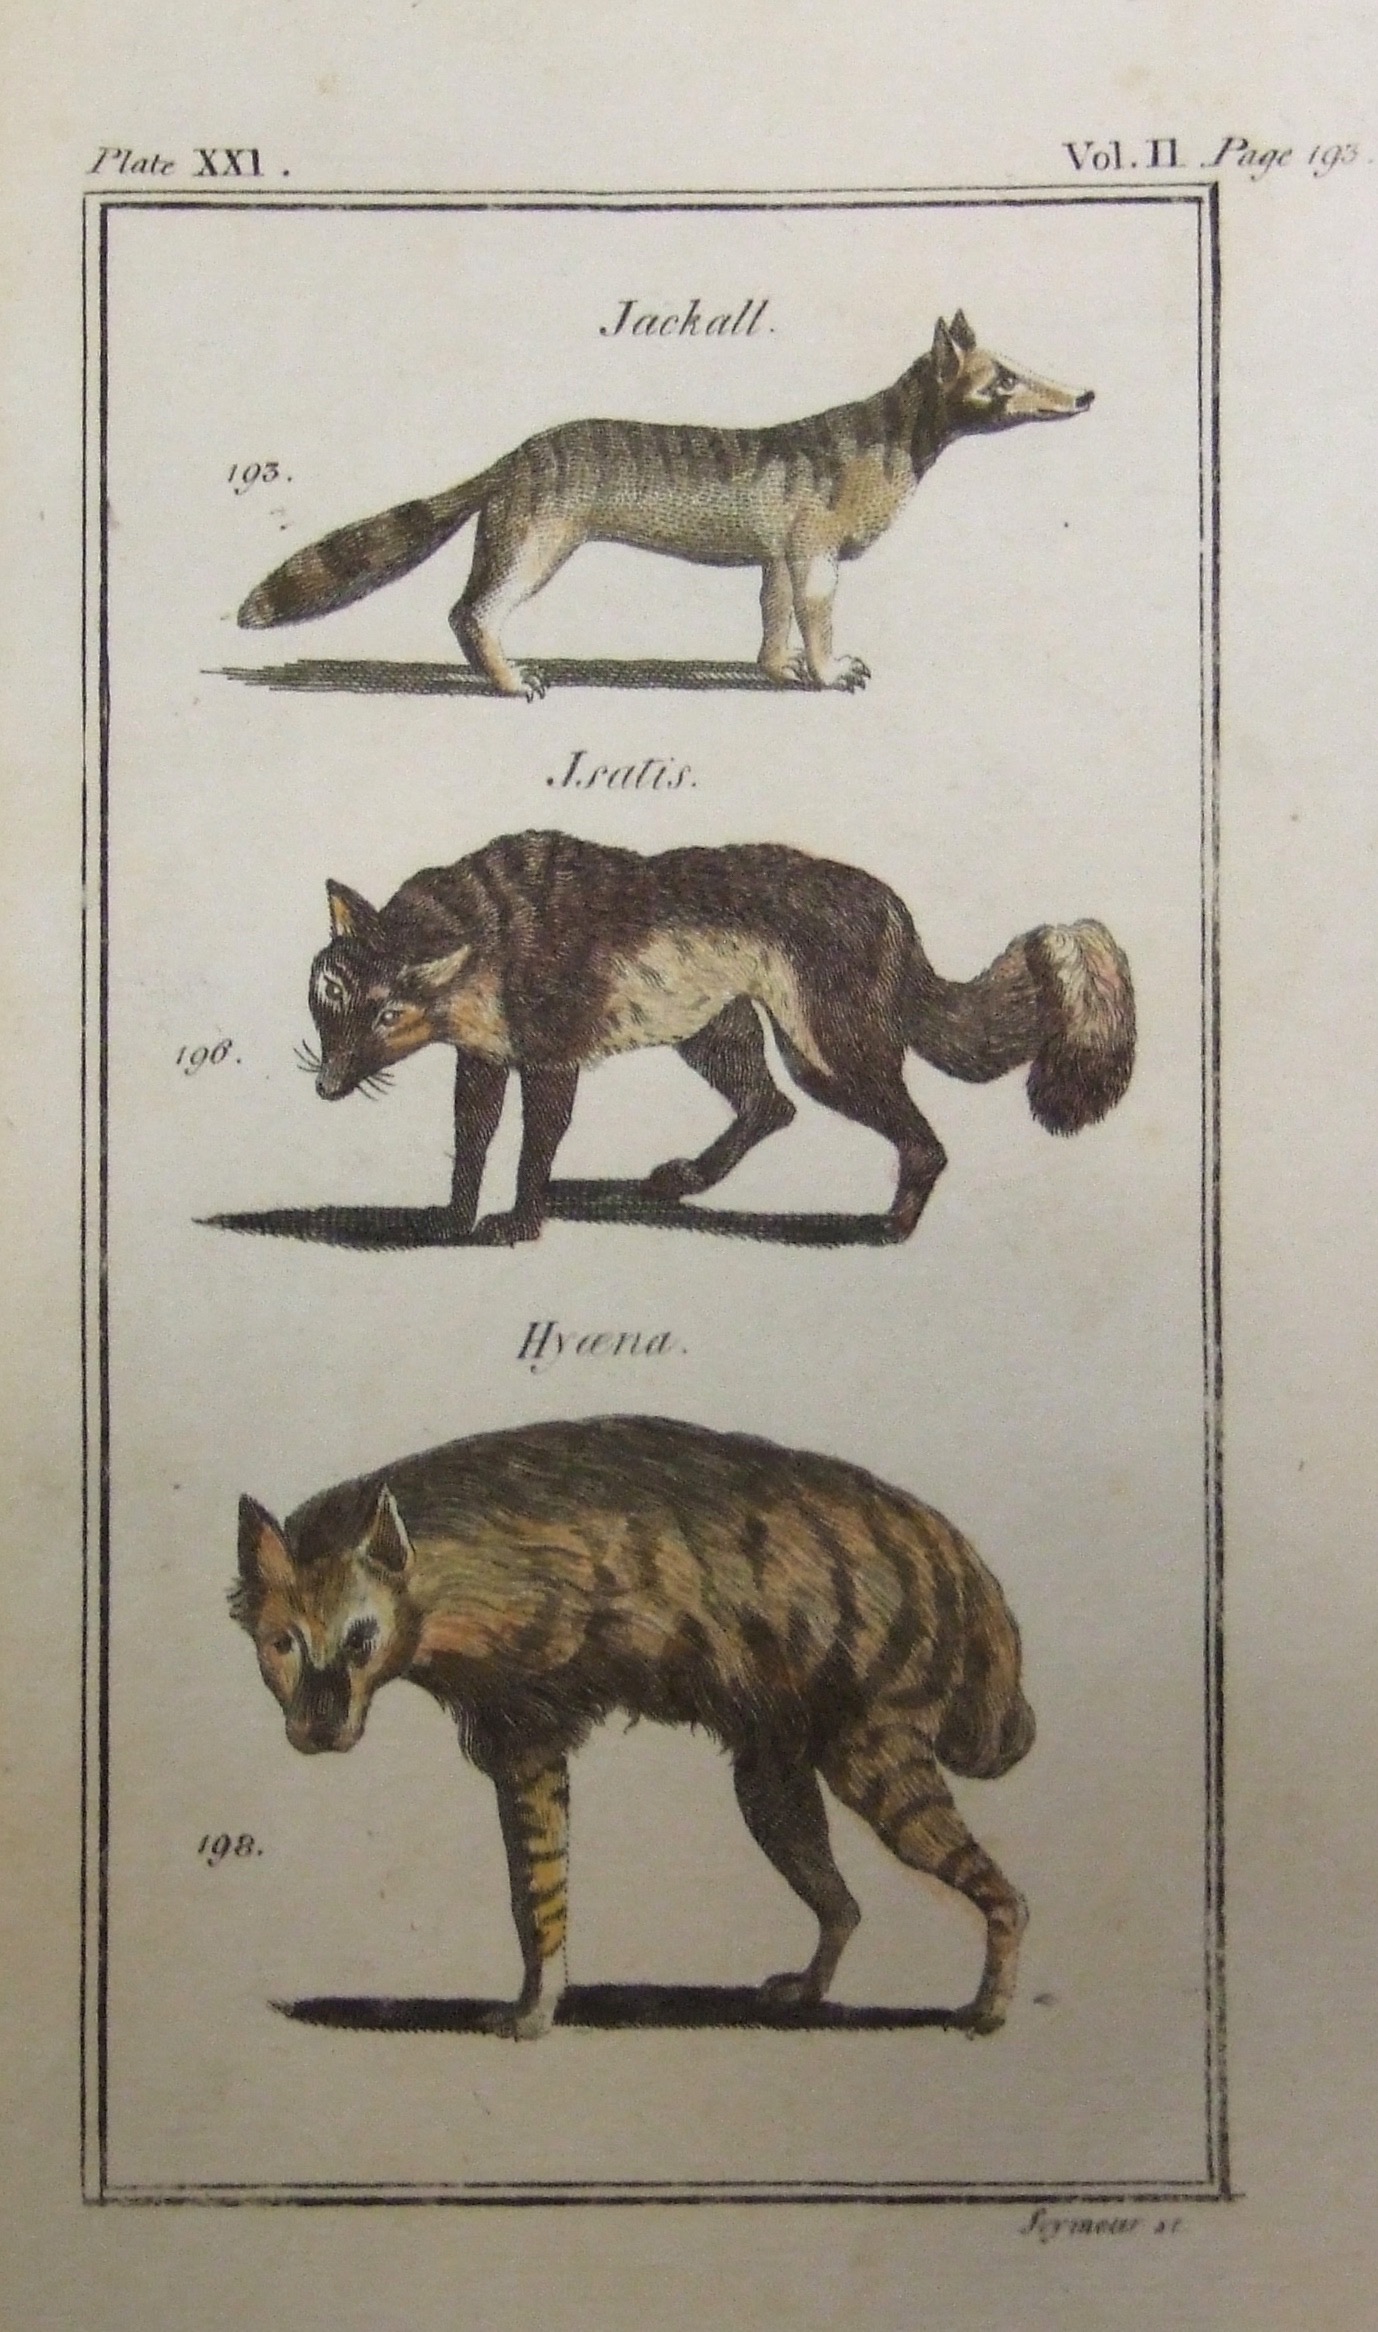 Jackall, Isatis (Wolf?), Hyena